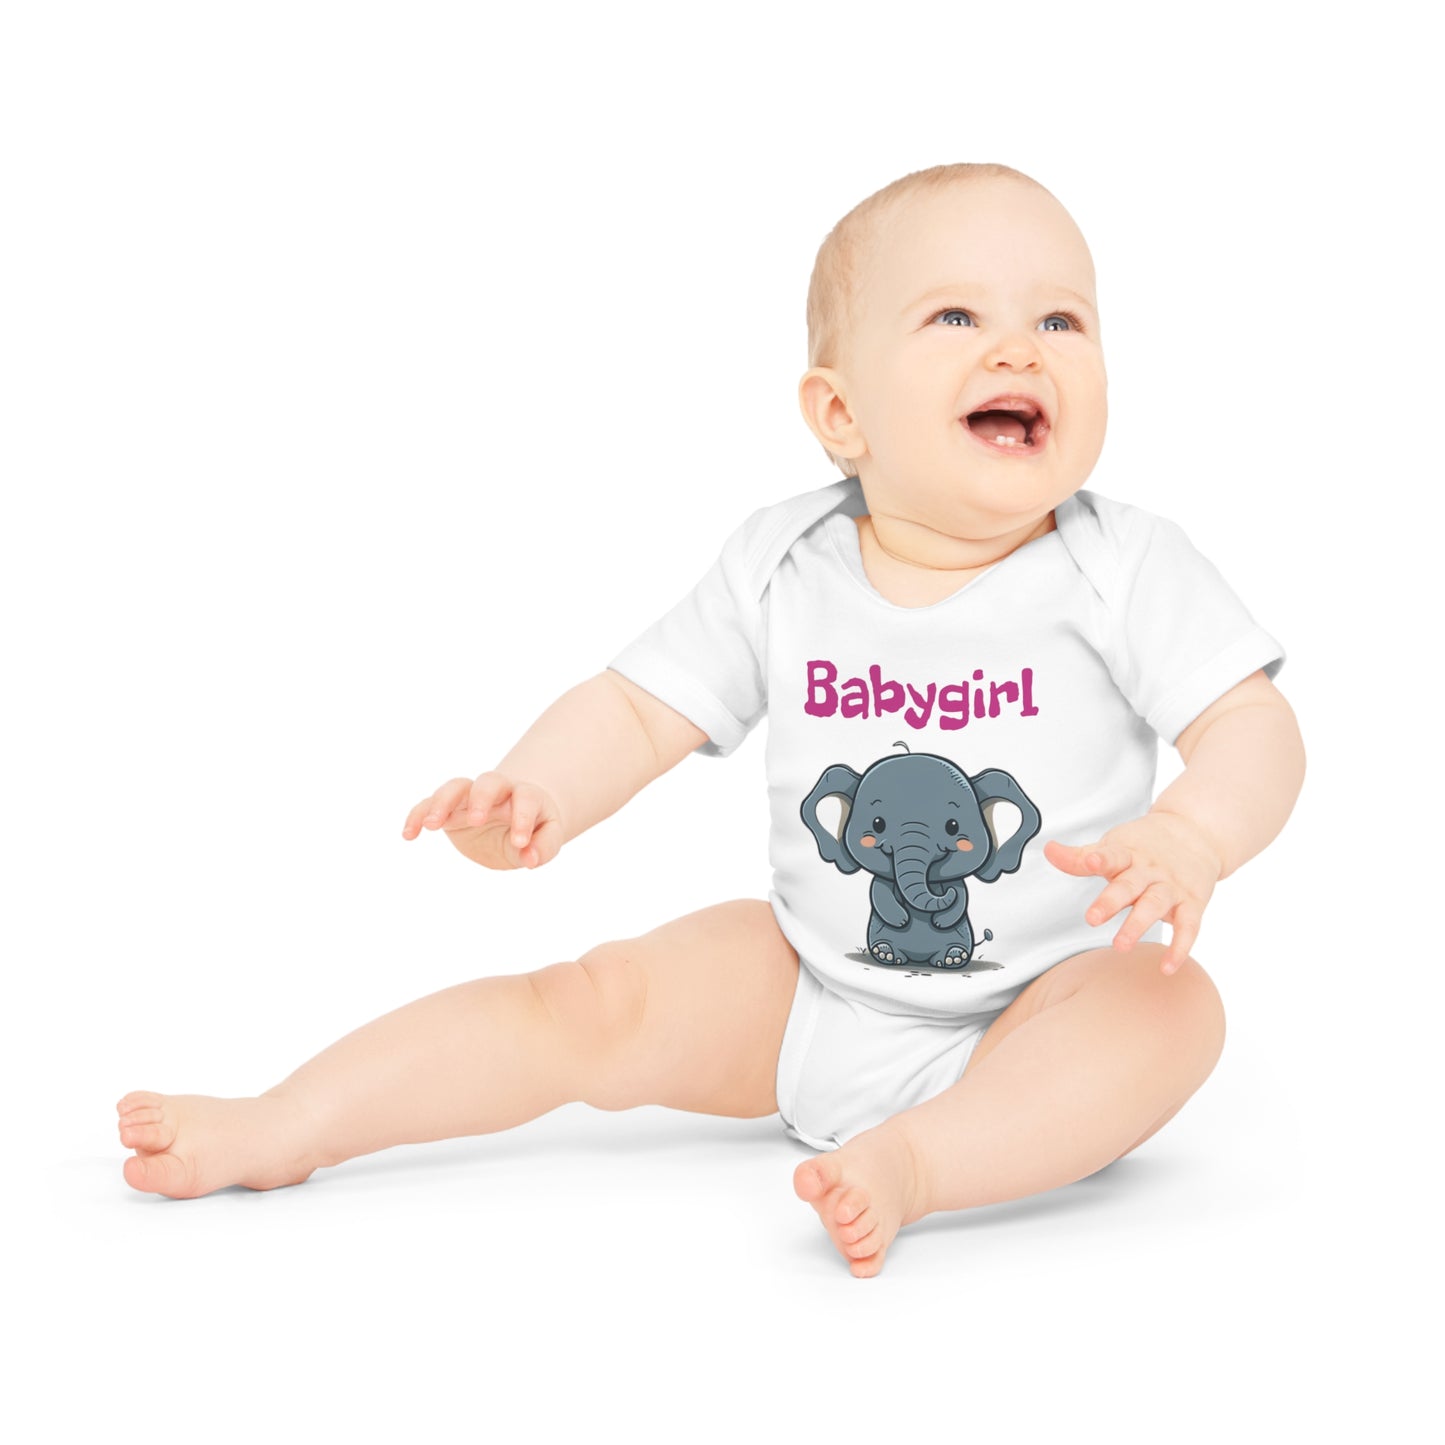 Supersüßer Babybody "Babygirl" | Onesie | Babybodie | Geschenkidee